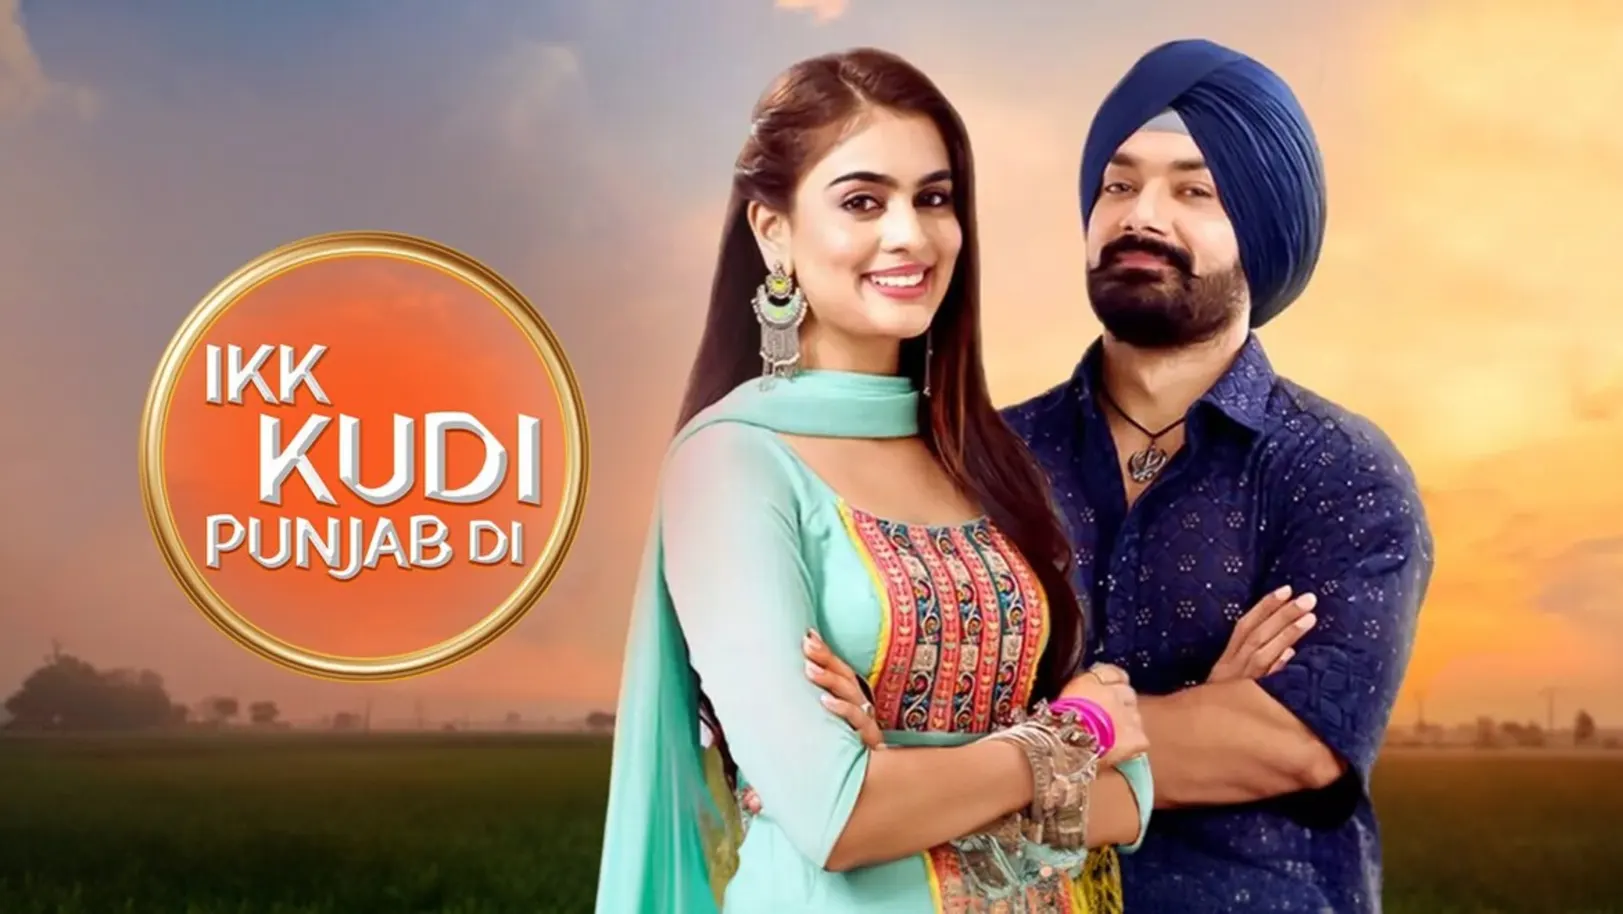 Ikk Kudi Punjab Di Streaming Now On Zee TV HD